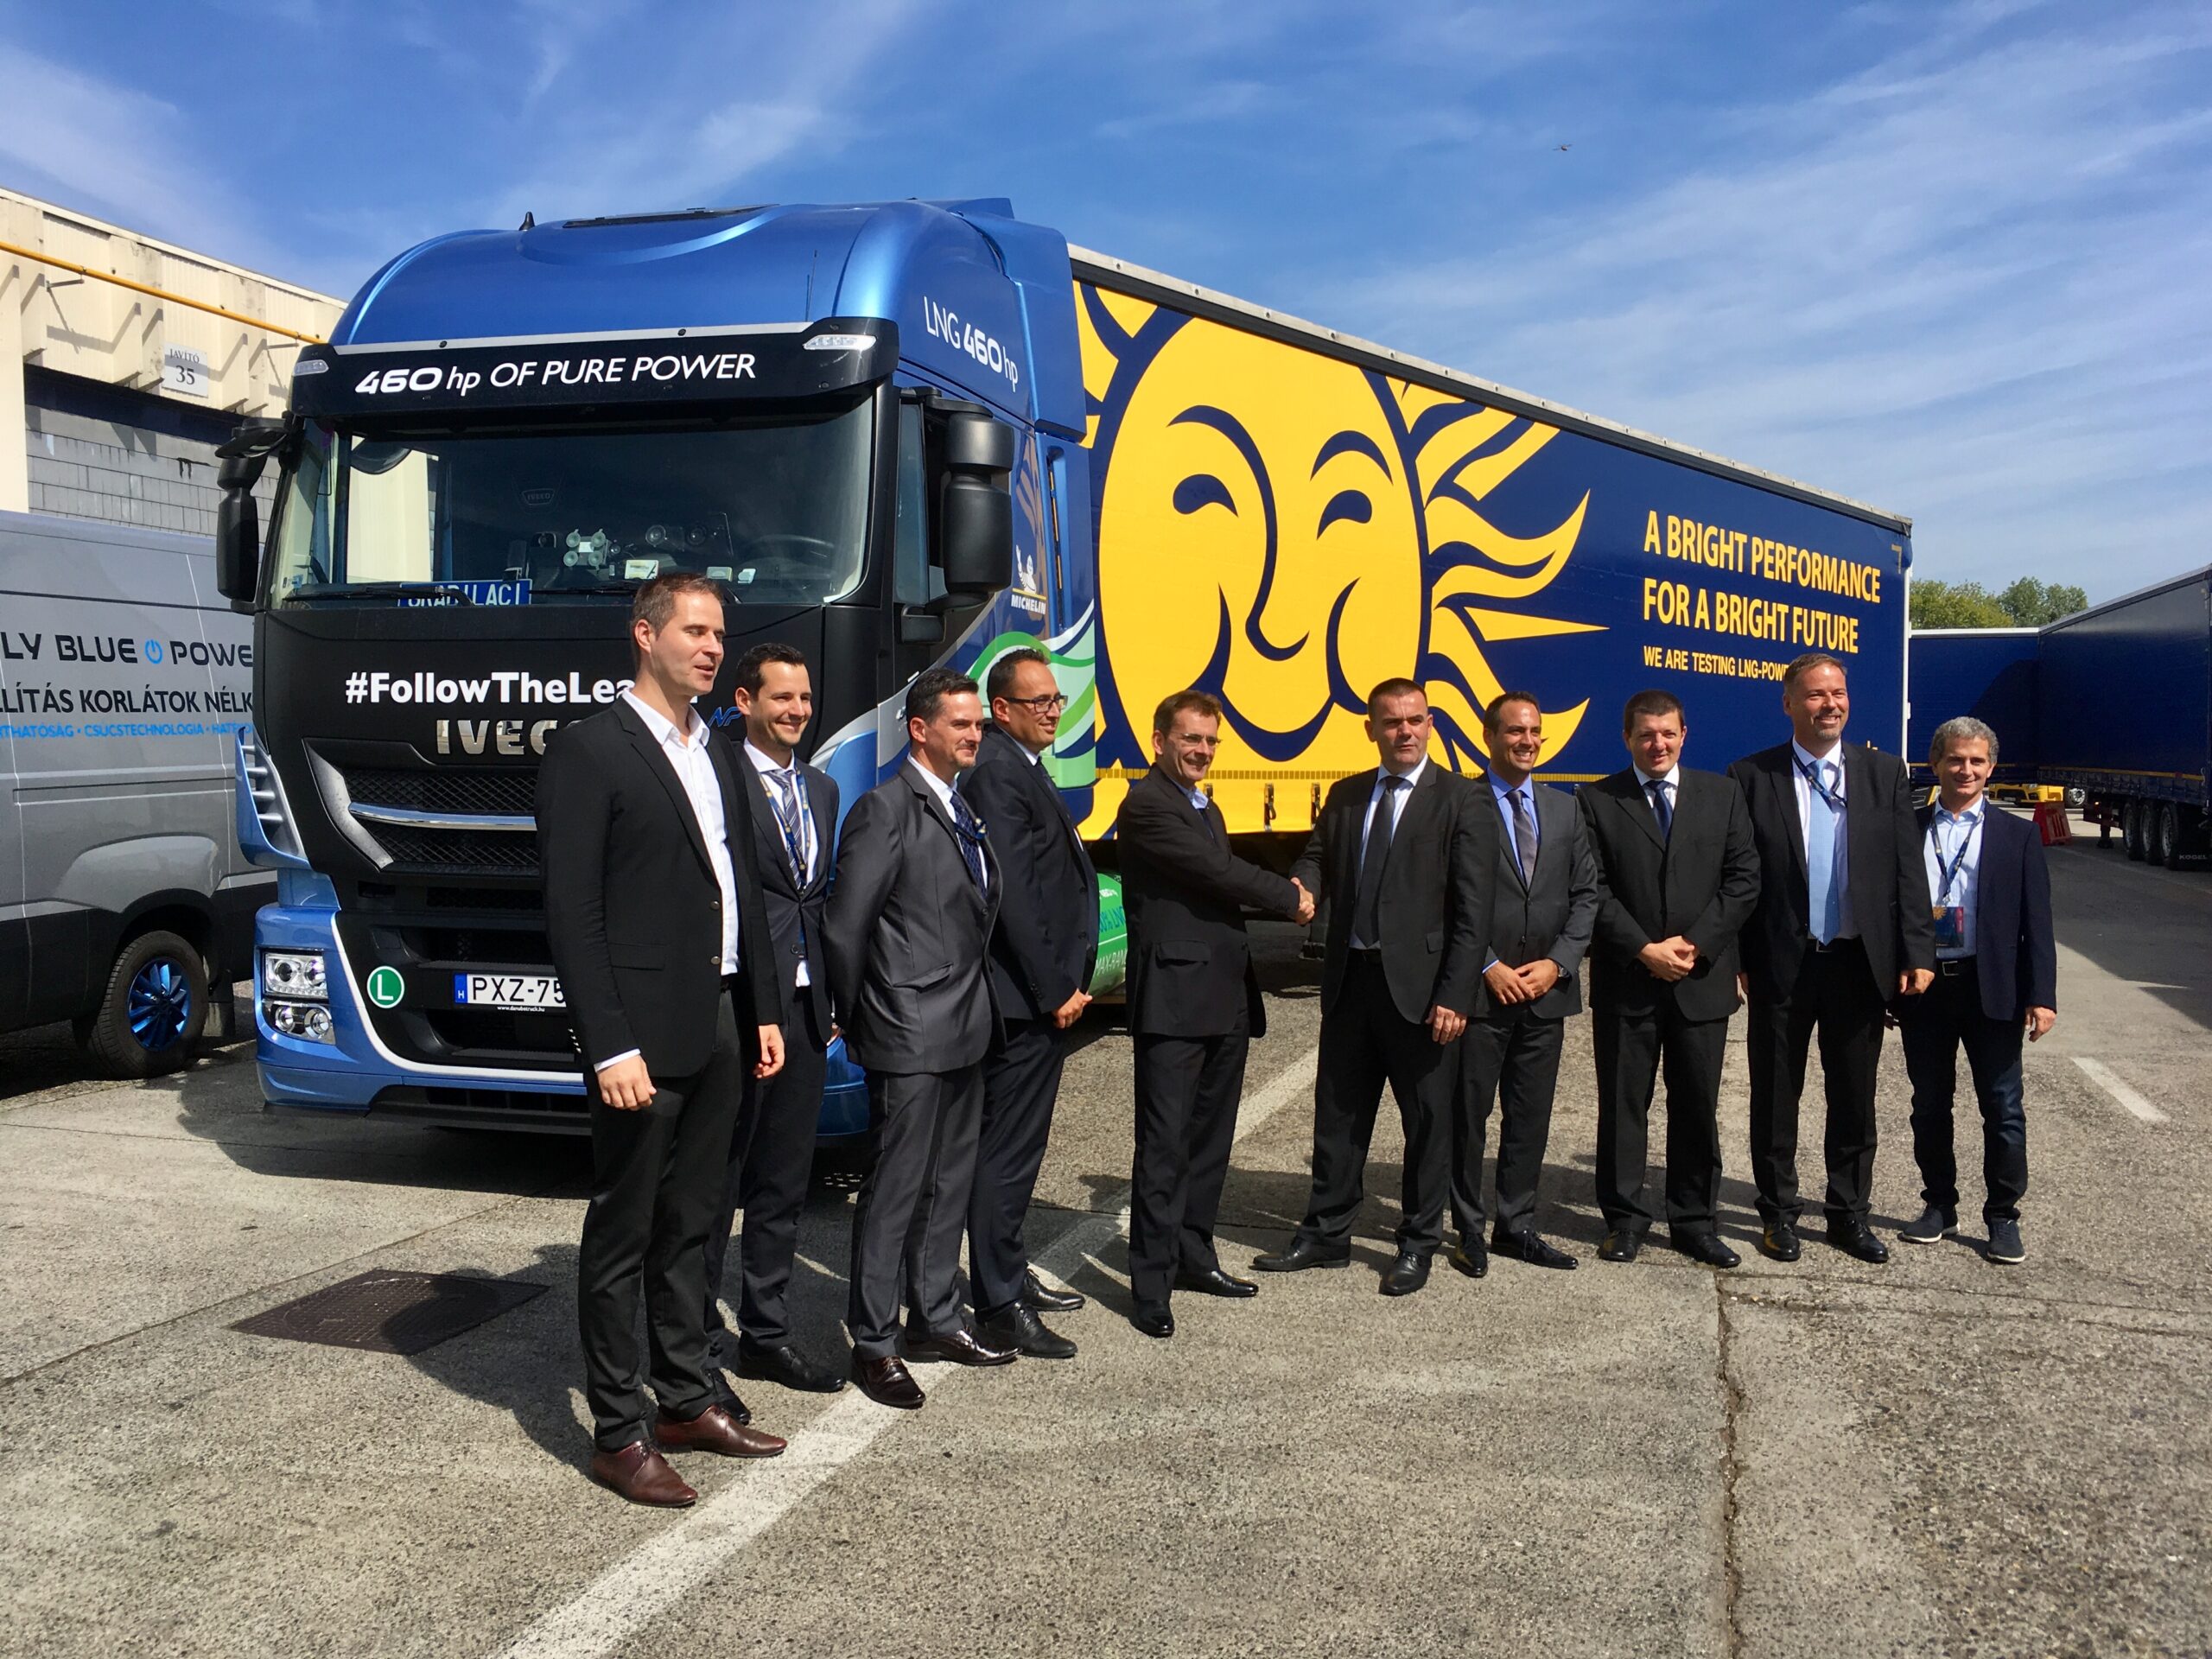 Waberer’s integra la sua flotta con camion Iveco alimentati a gas naturale